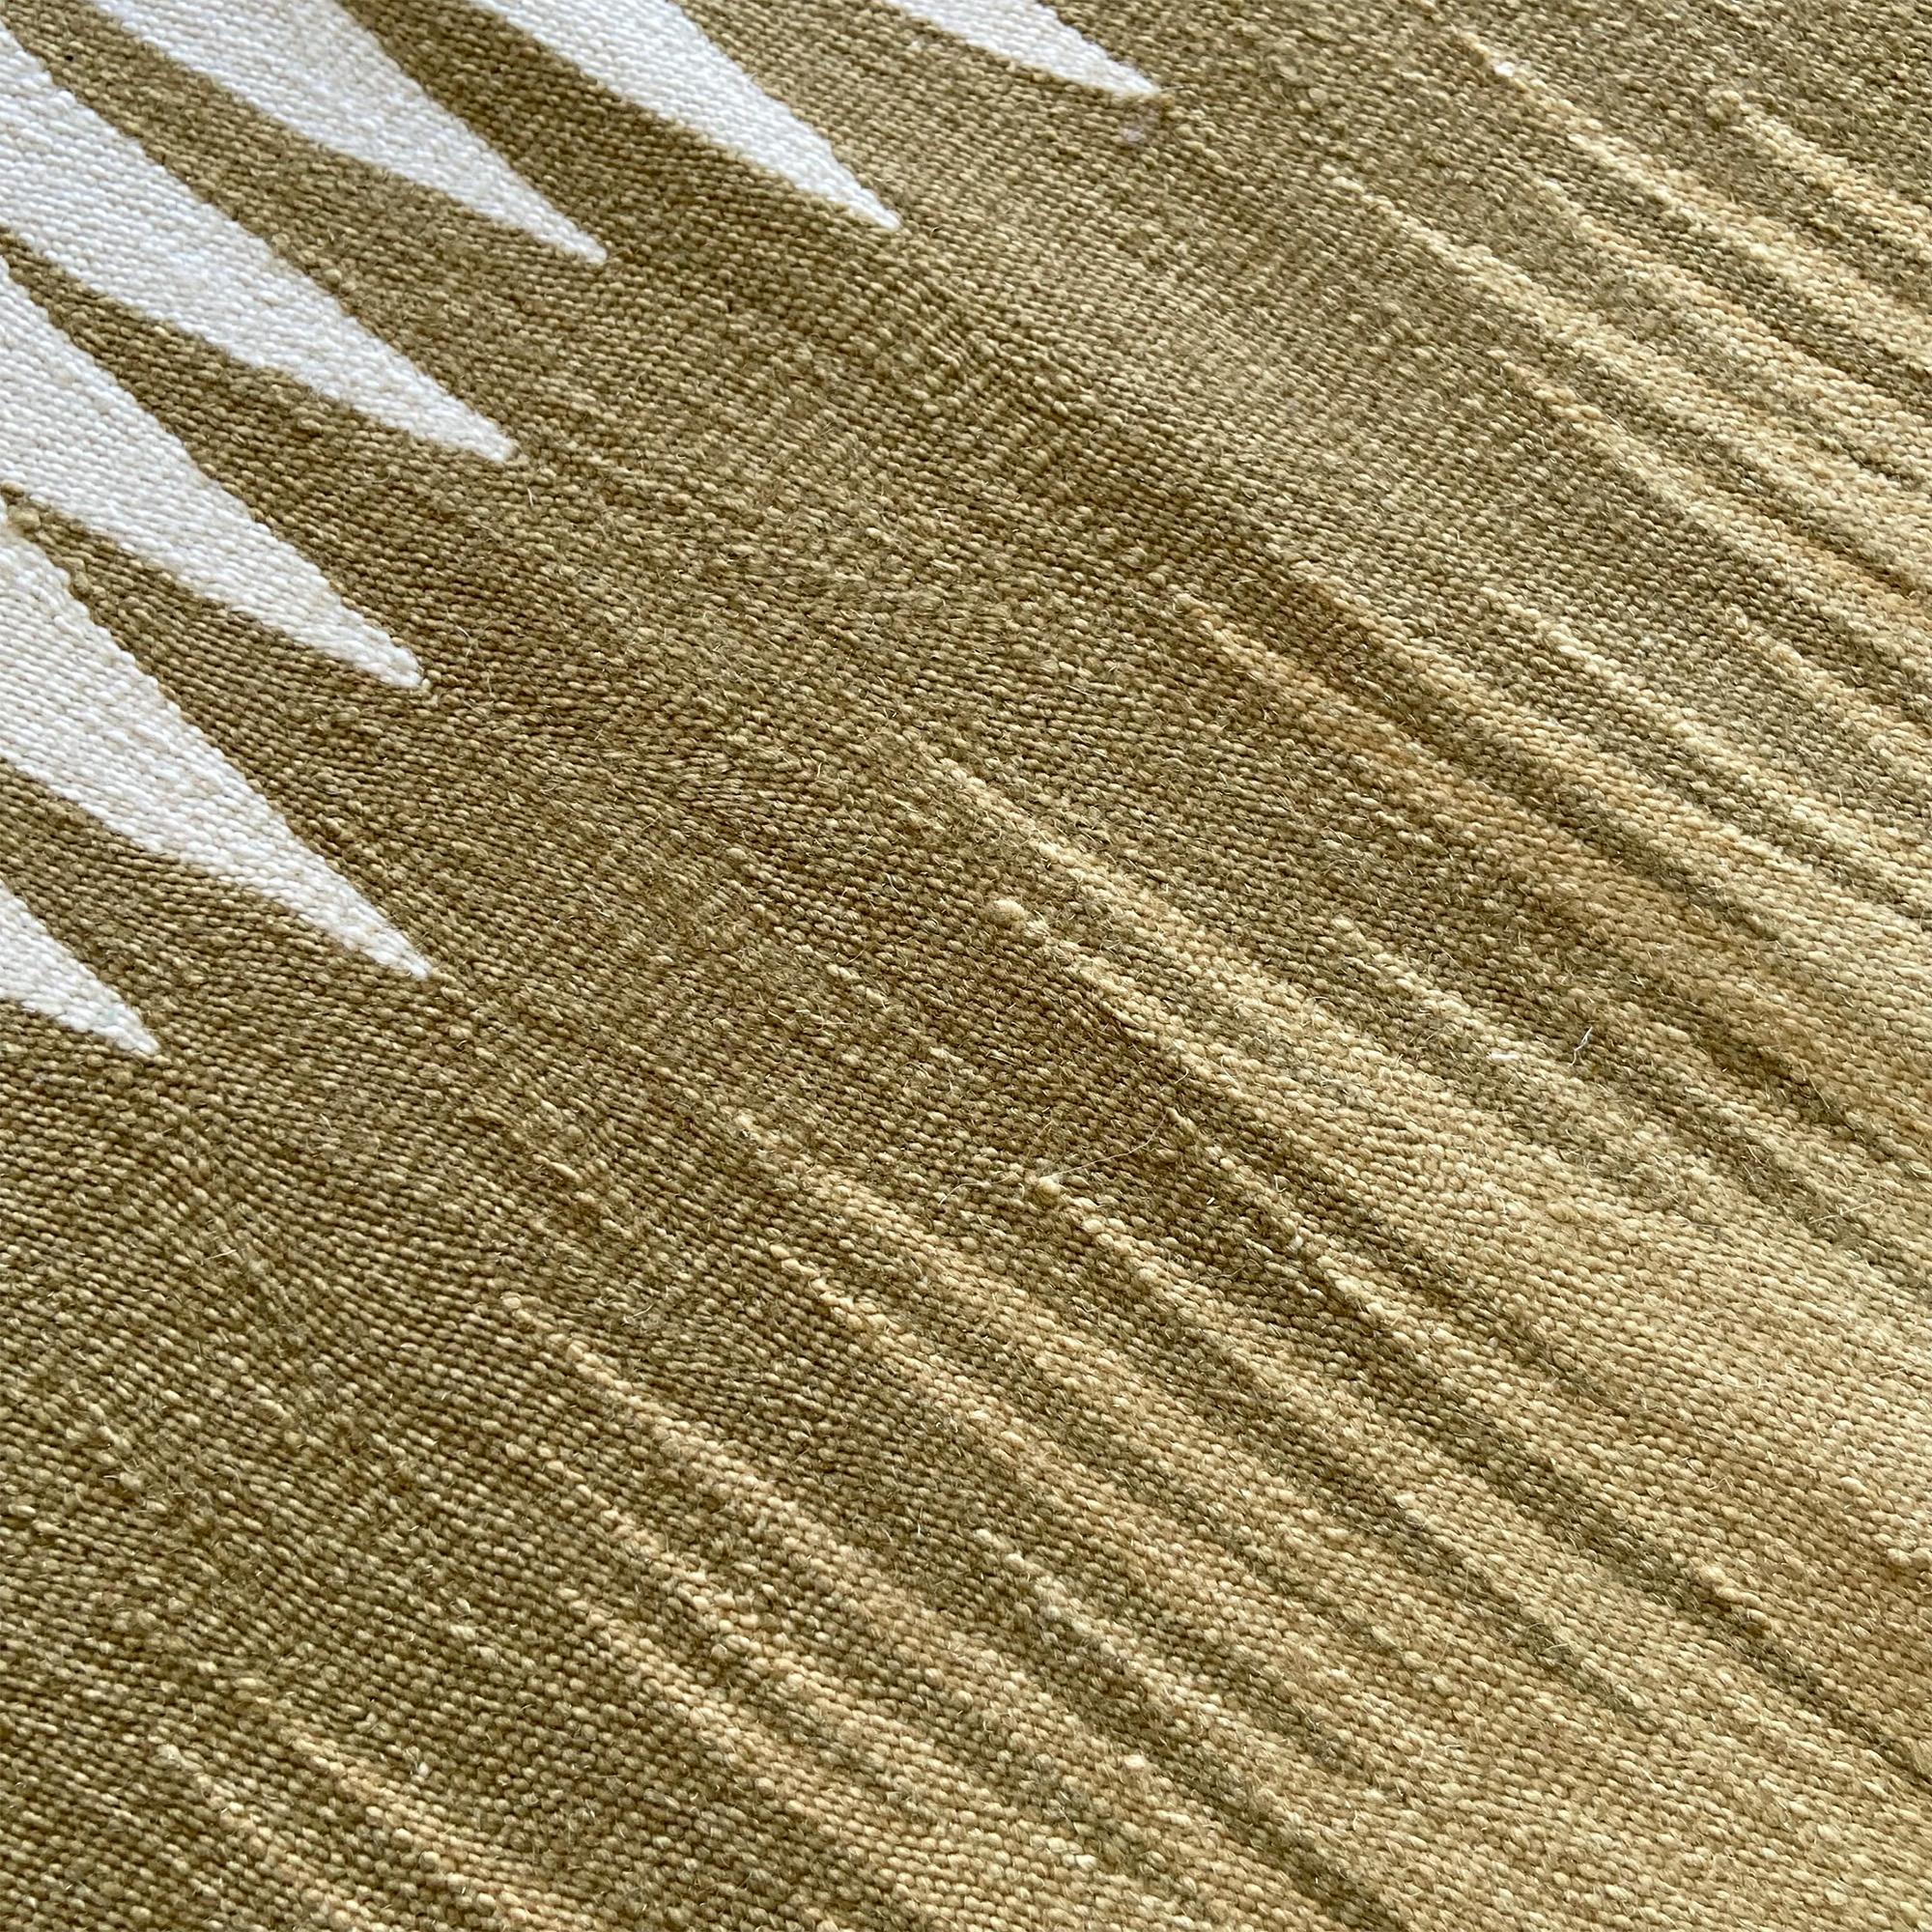 Le tapis kilim Yakamoz No 4 fait partie d'une série de kilims qui s'inspirent de la poésie des reflets lumineux à la surface de la mer. Les motifs abstraits, qui rappellent les transitions de couleurs alternées créées par la lumière réfléchie, sont